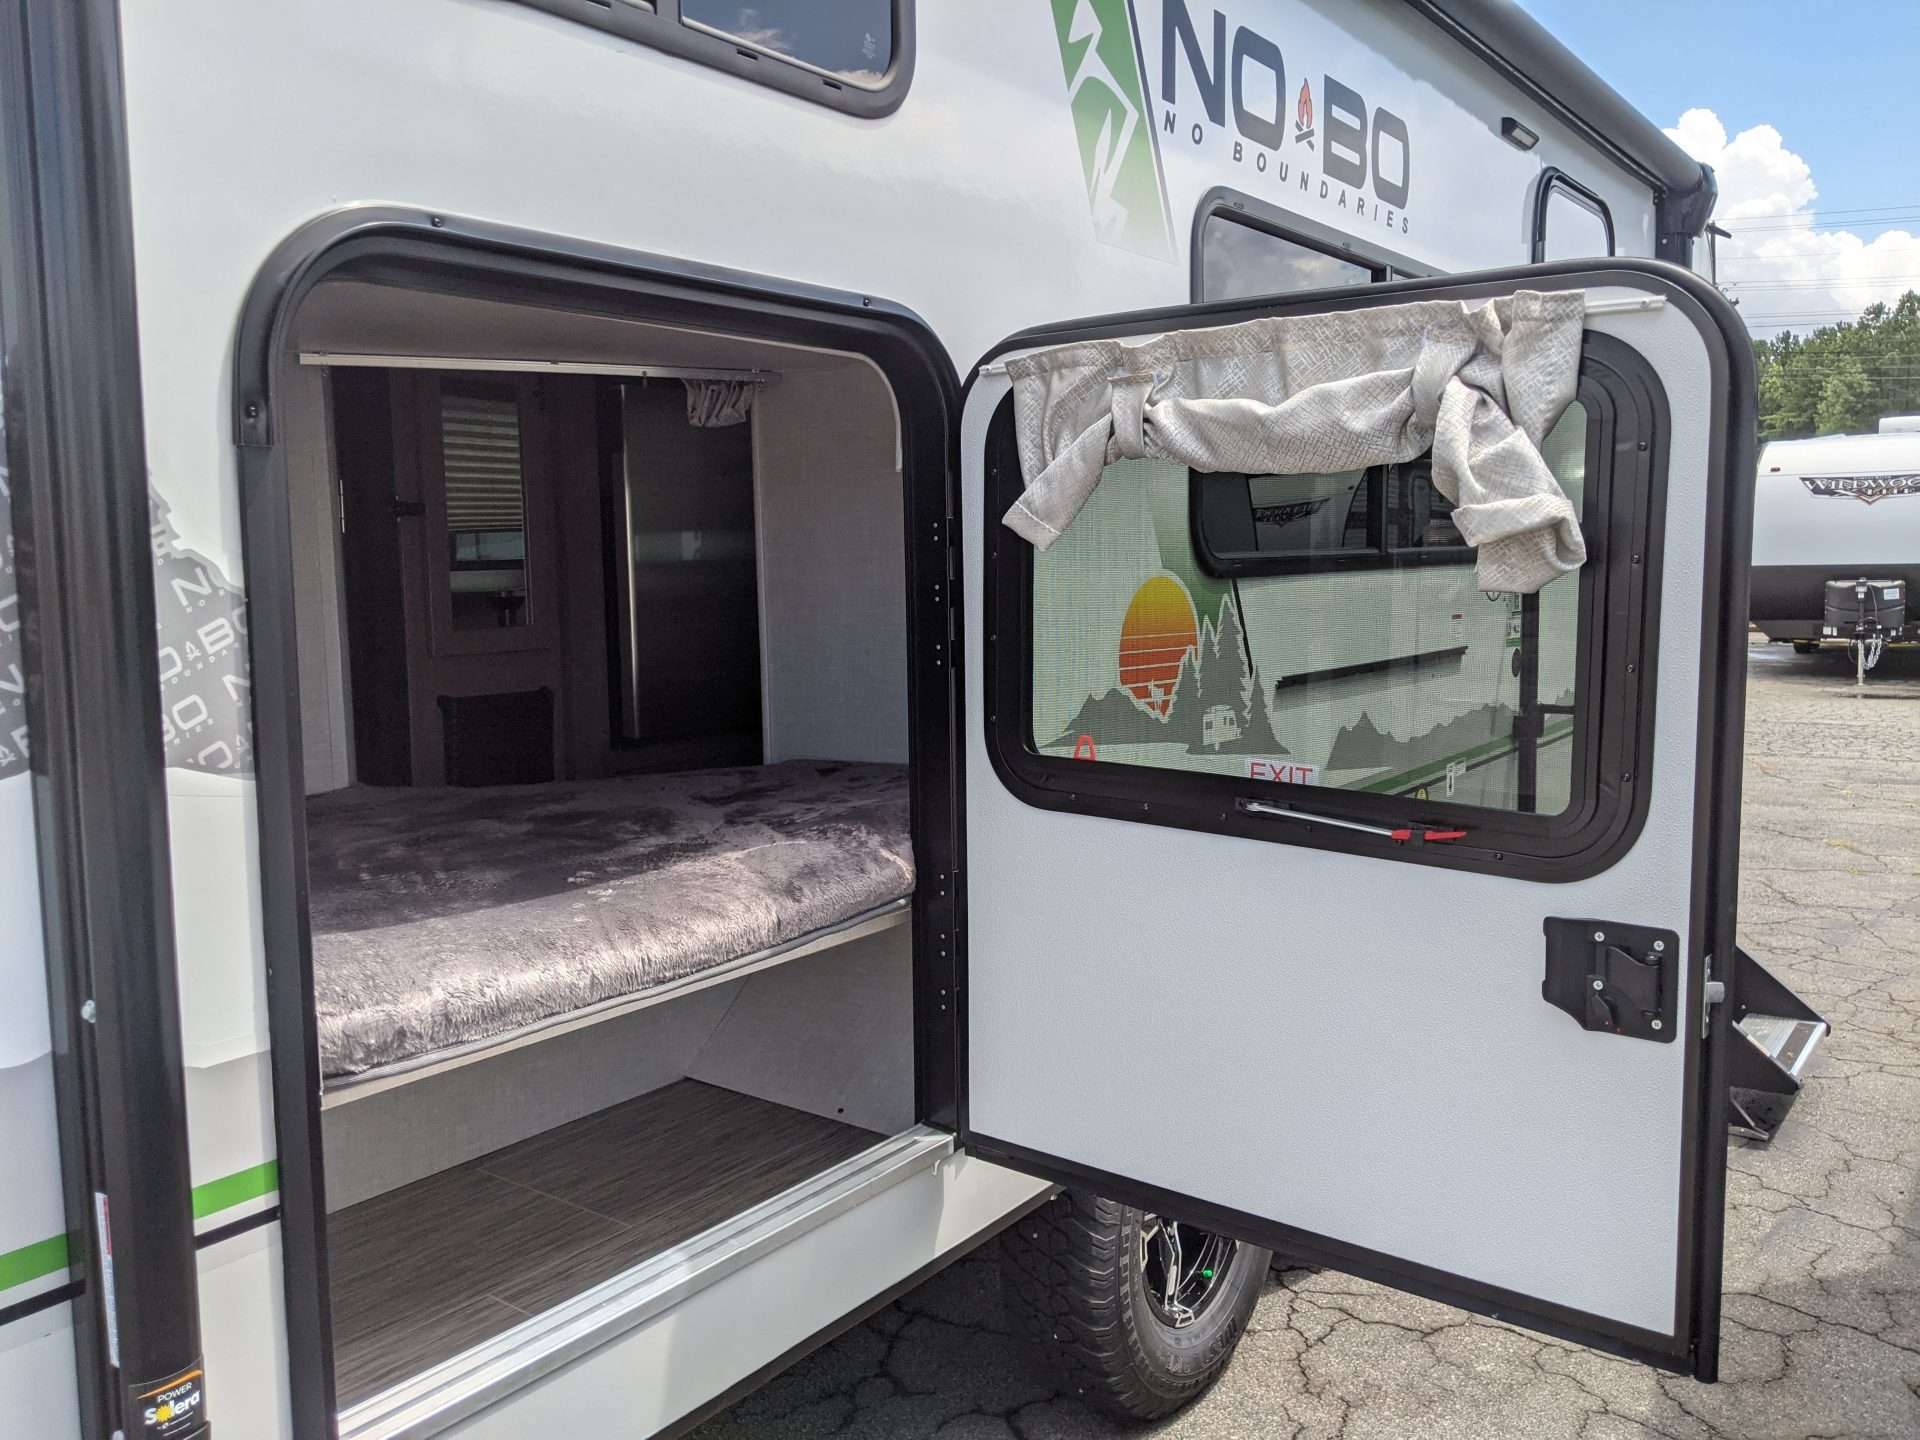 Nobo trailer bunk access door for storage